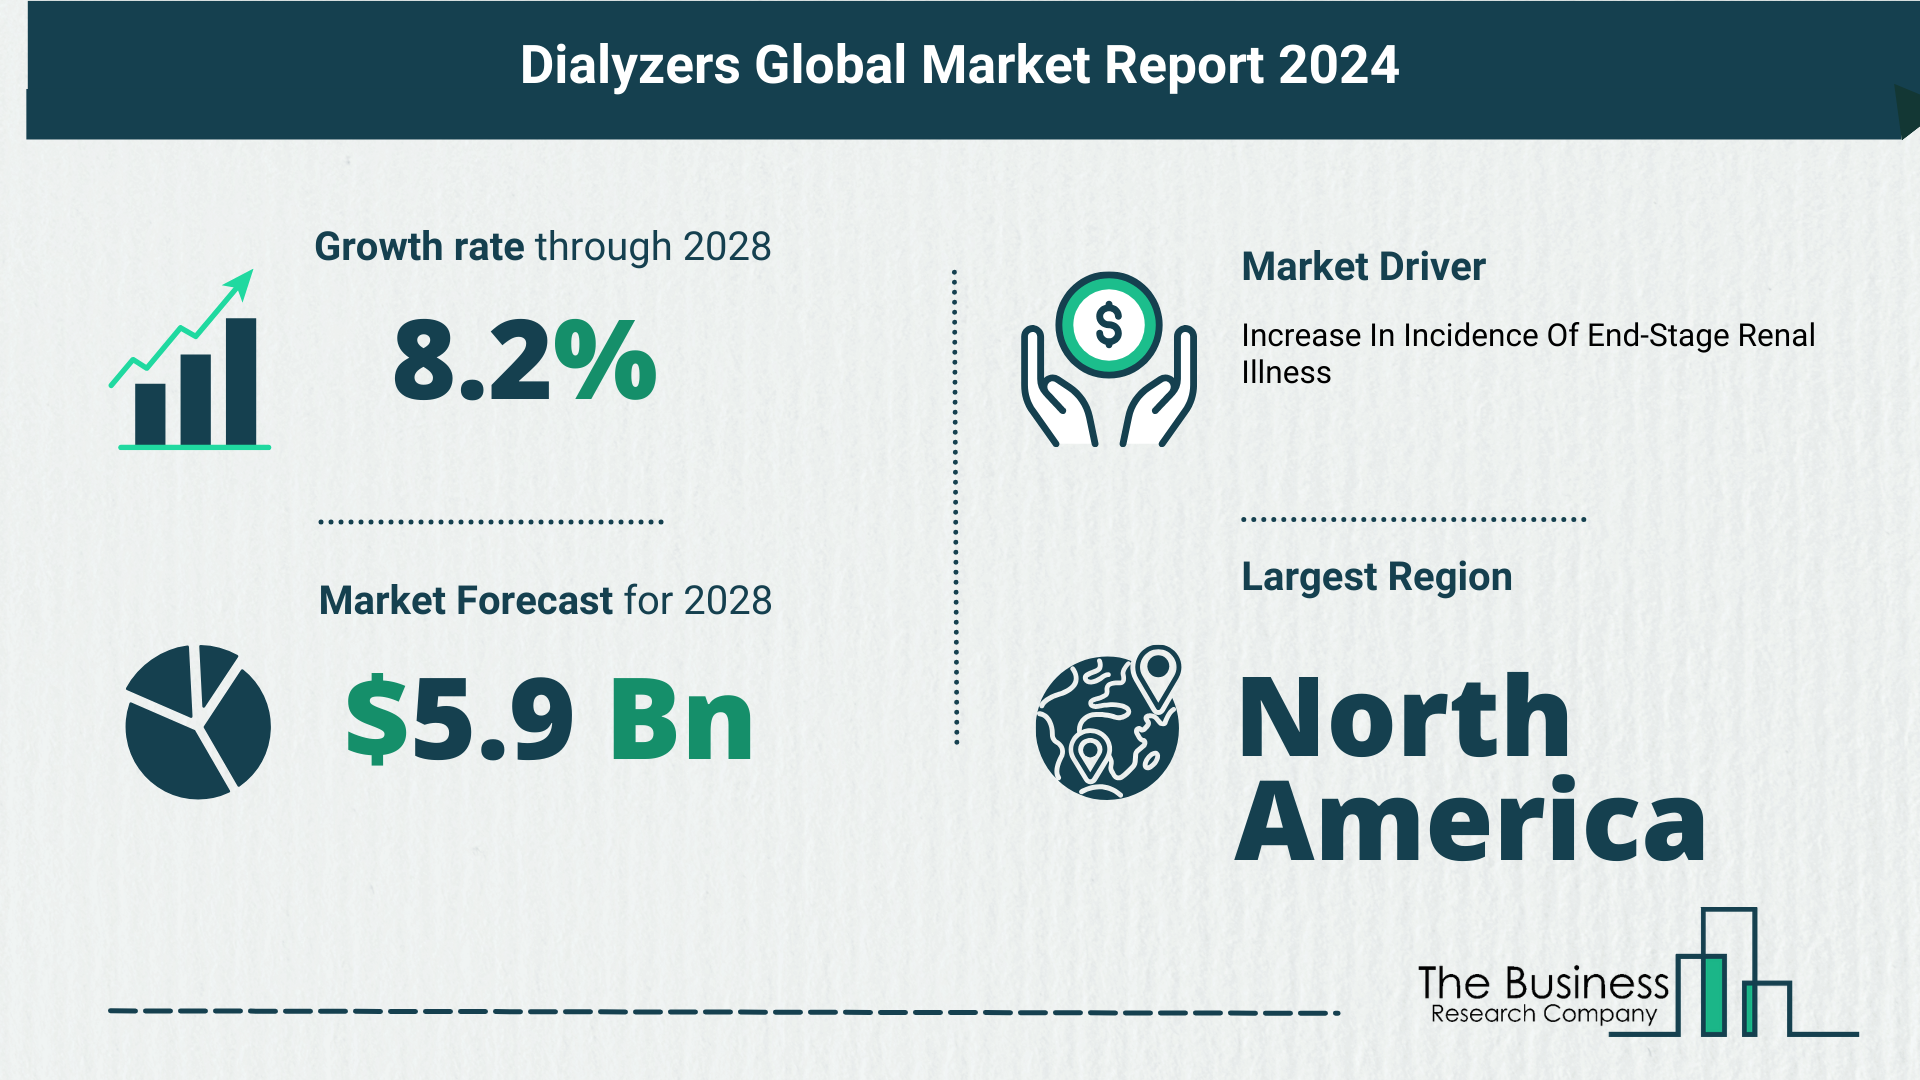 Global Dialyzers Market